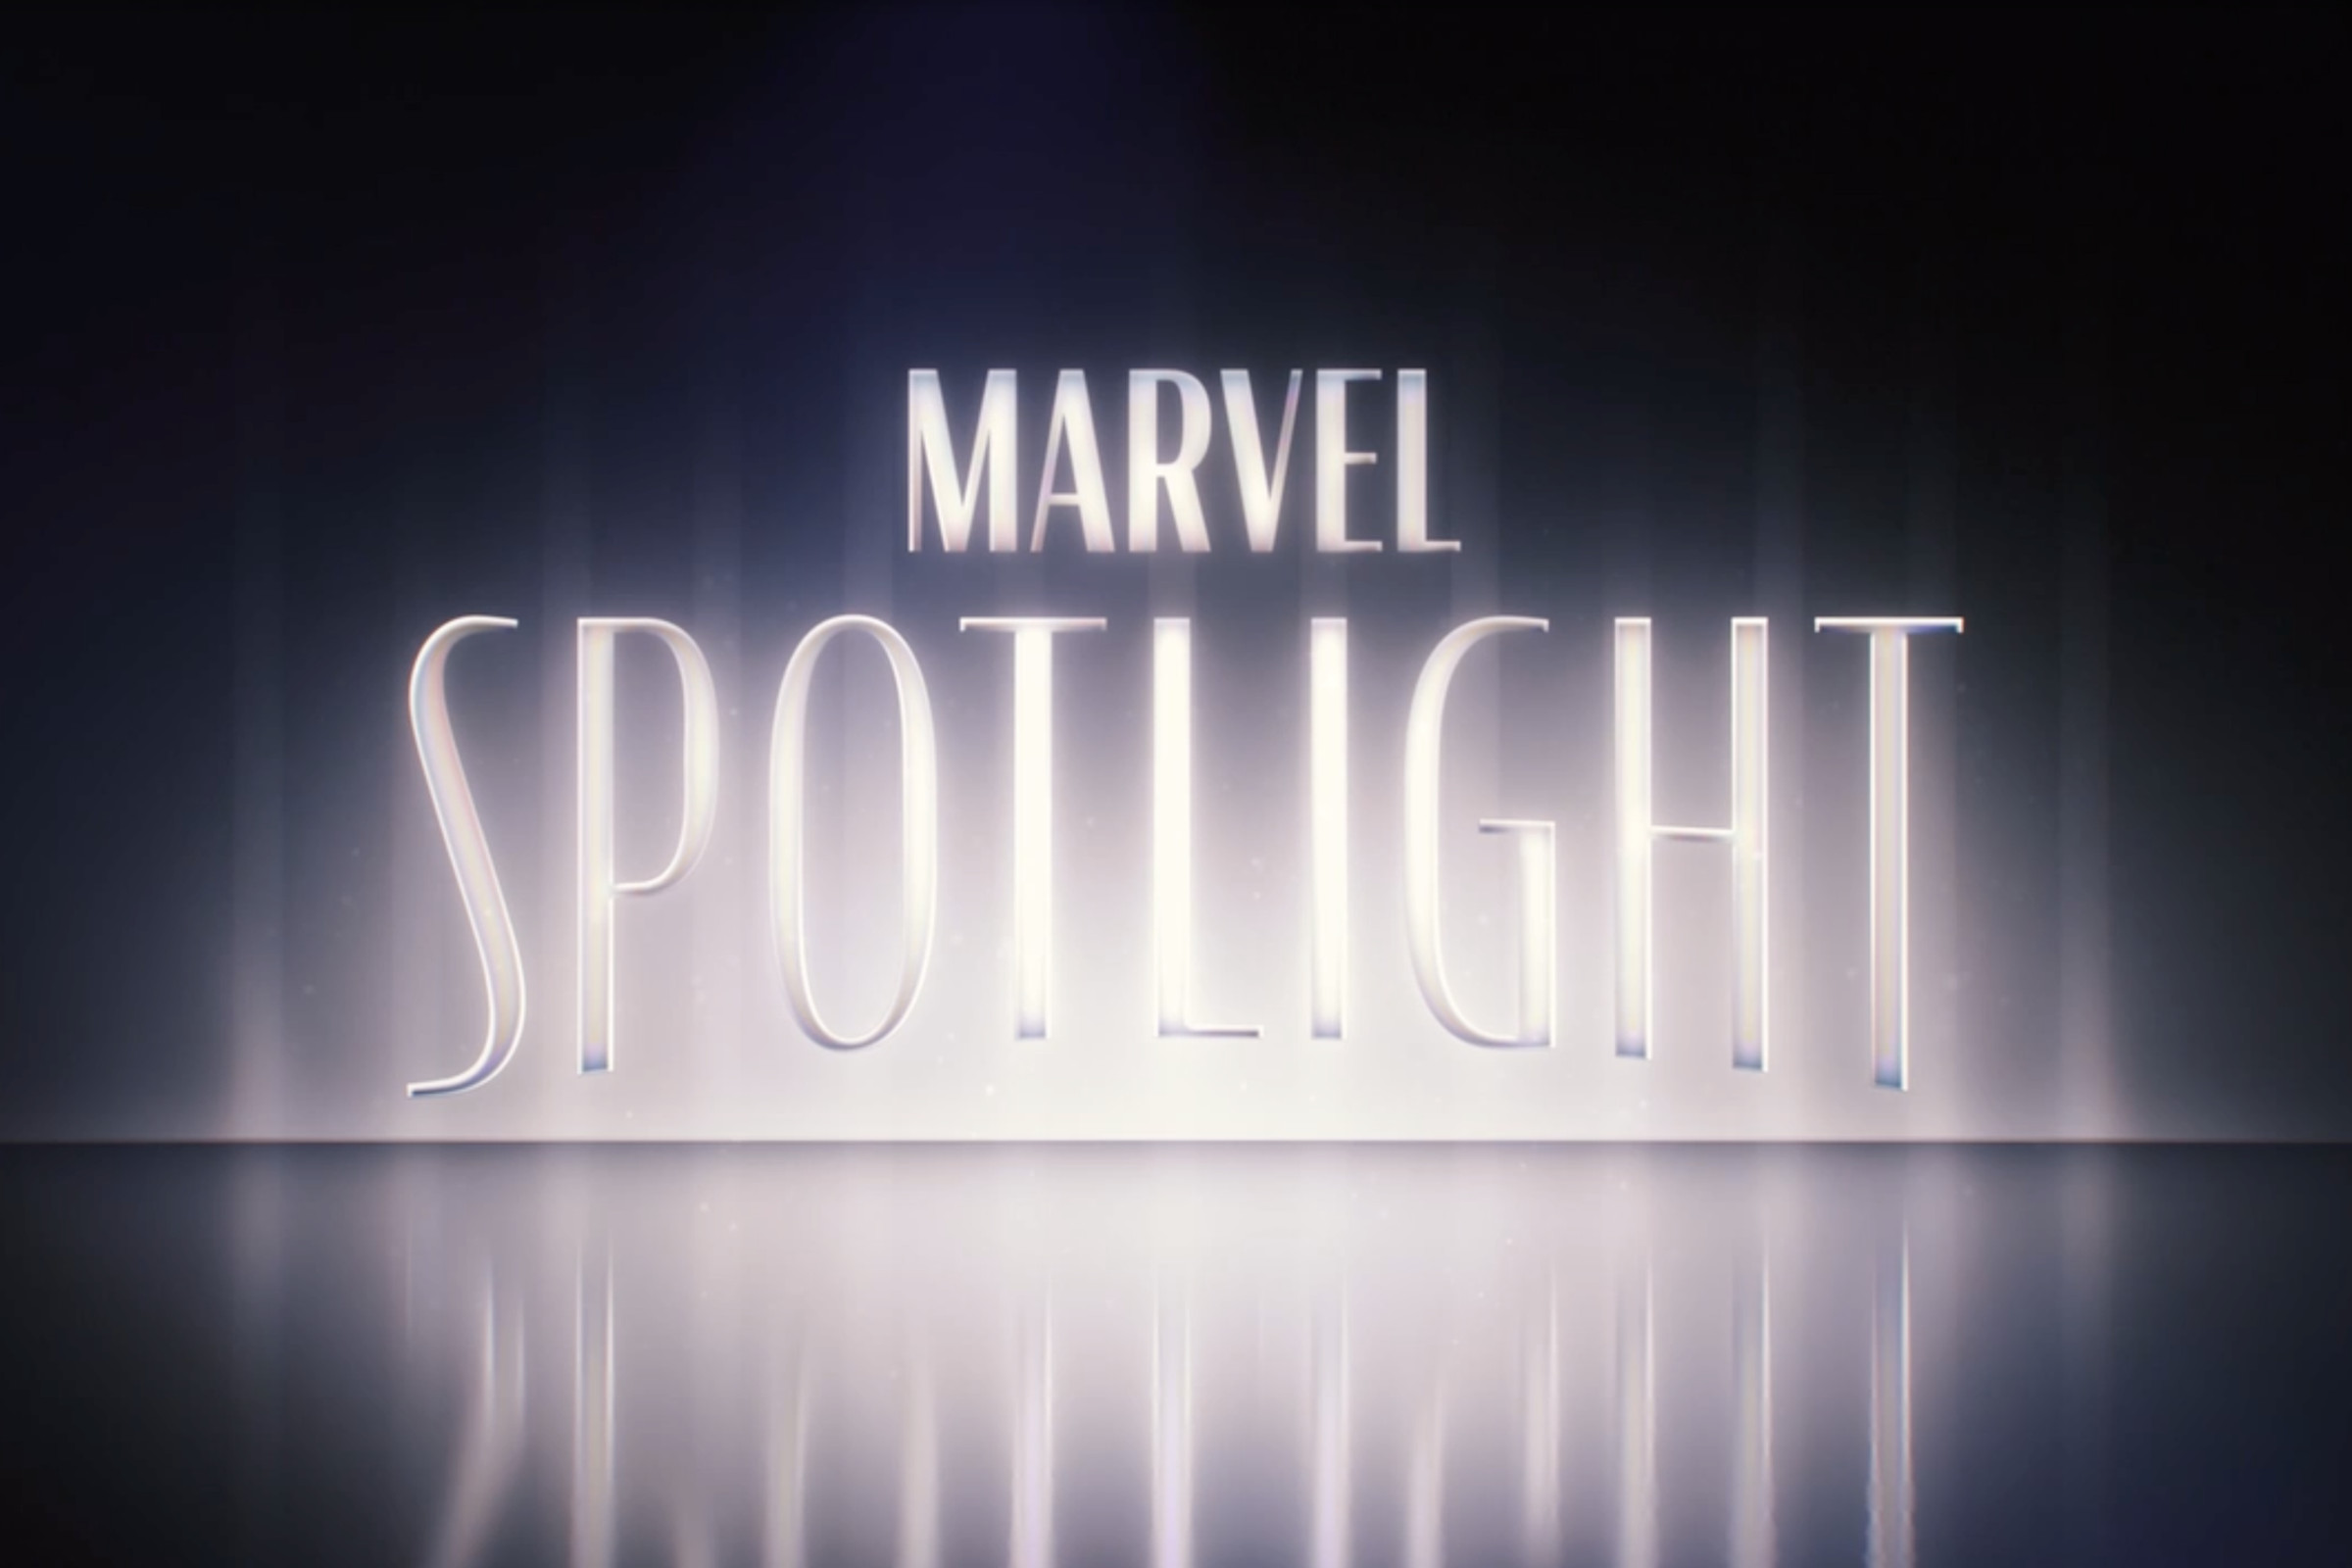 The Marvel Spotlight logo.